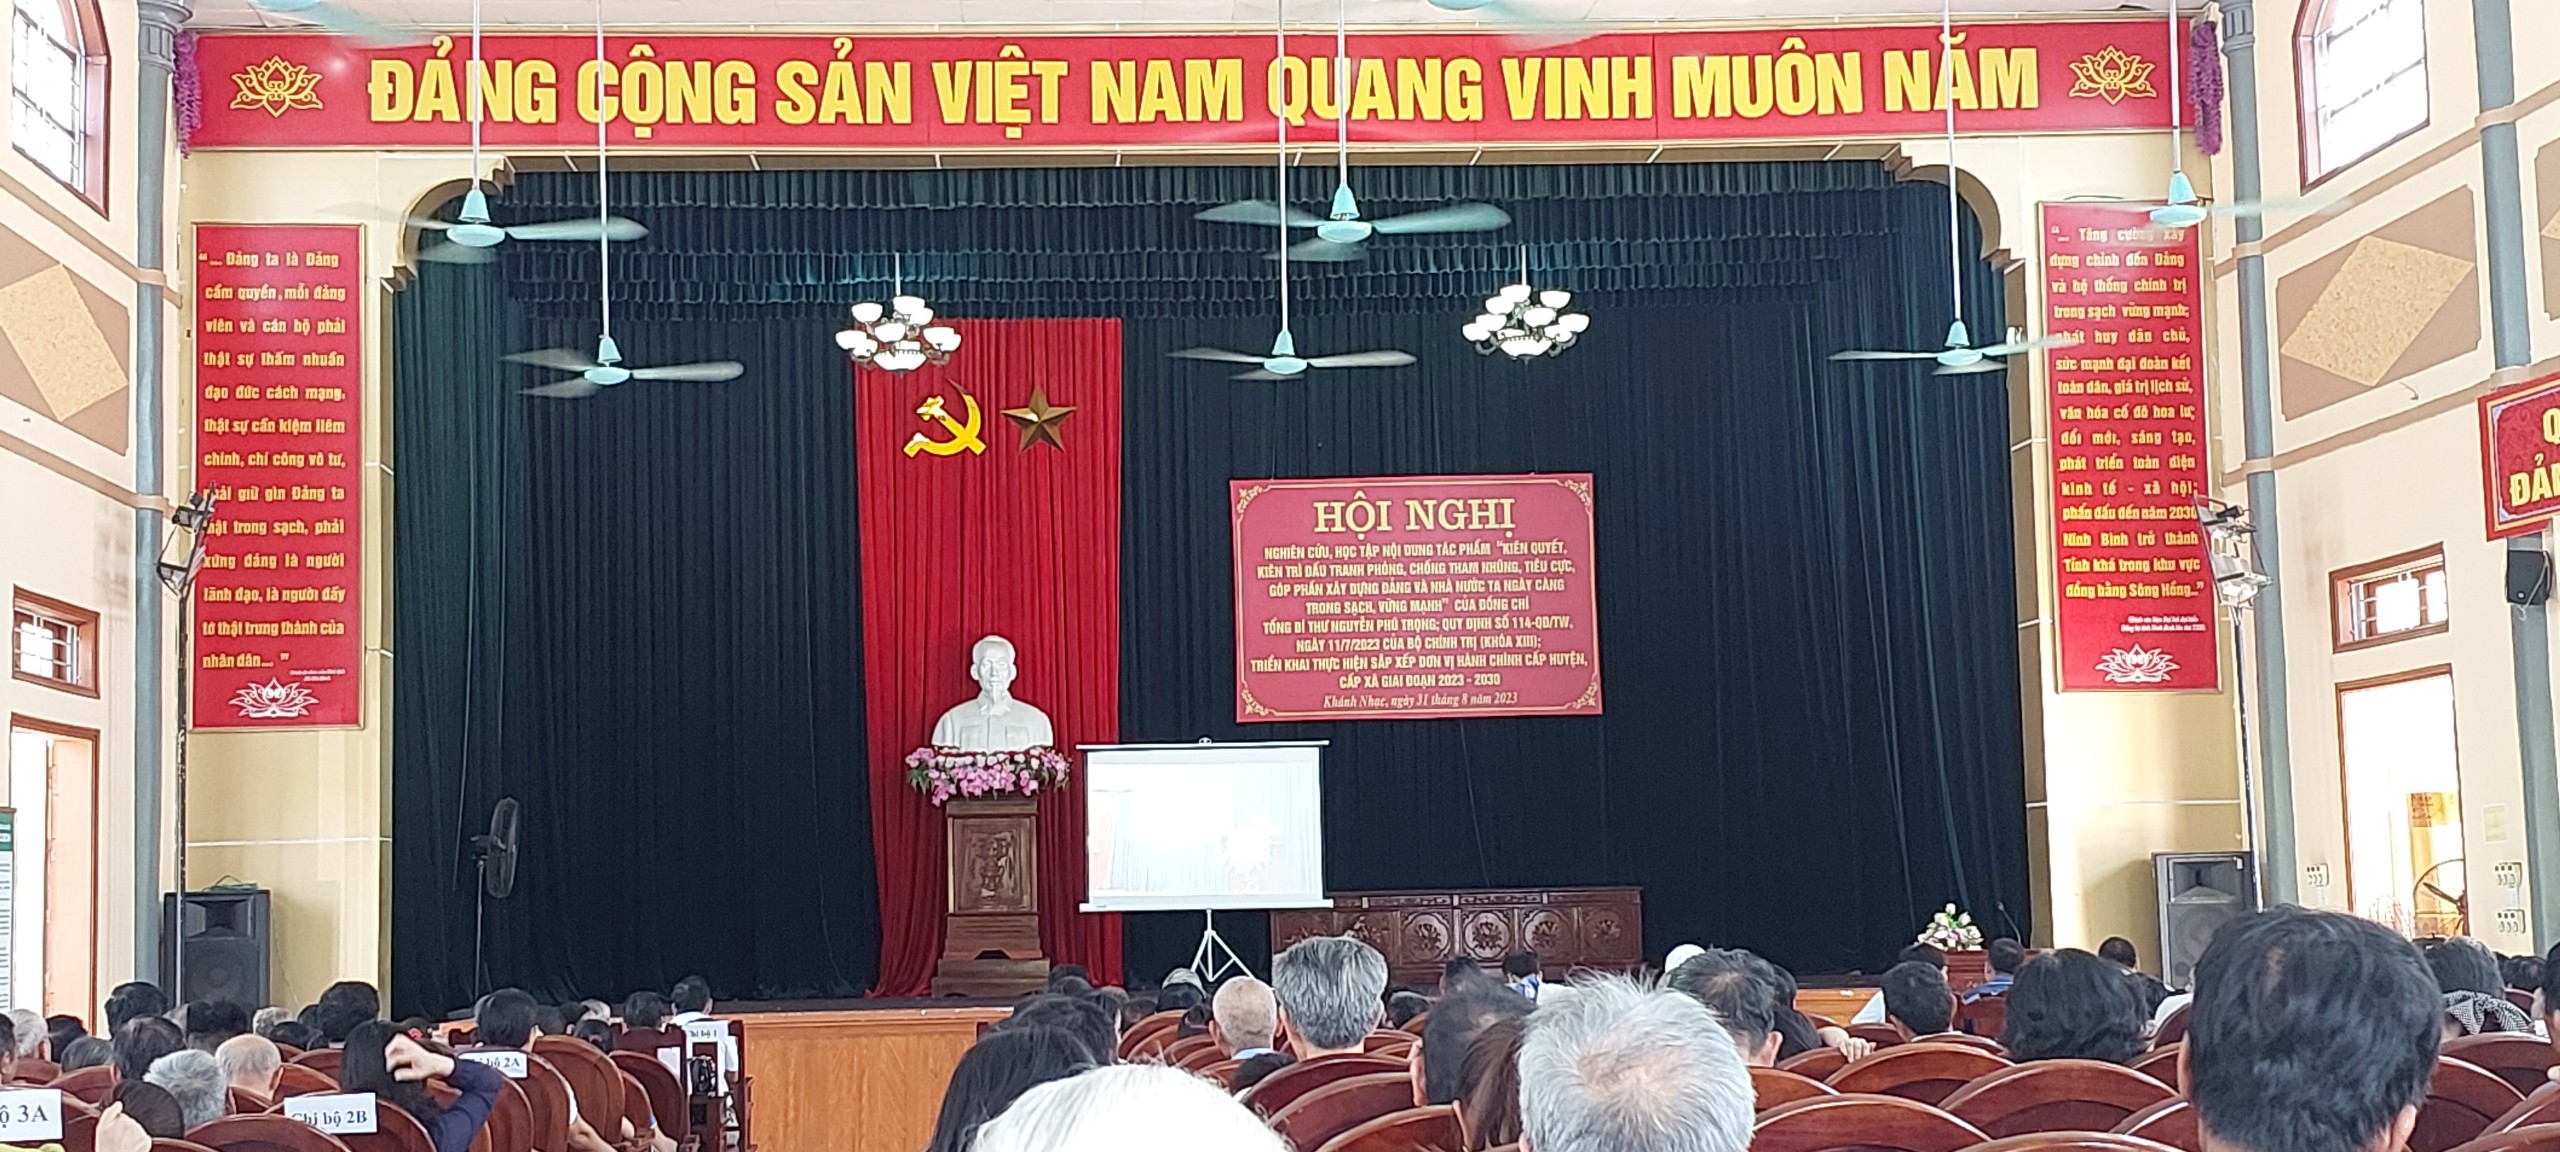 HN trực tuyến nghiên cứu, học tập nội dung tác phẩm của Tổng Bí thư Nguyễn Phú Trọng...